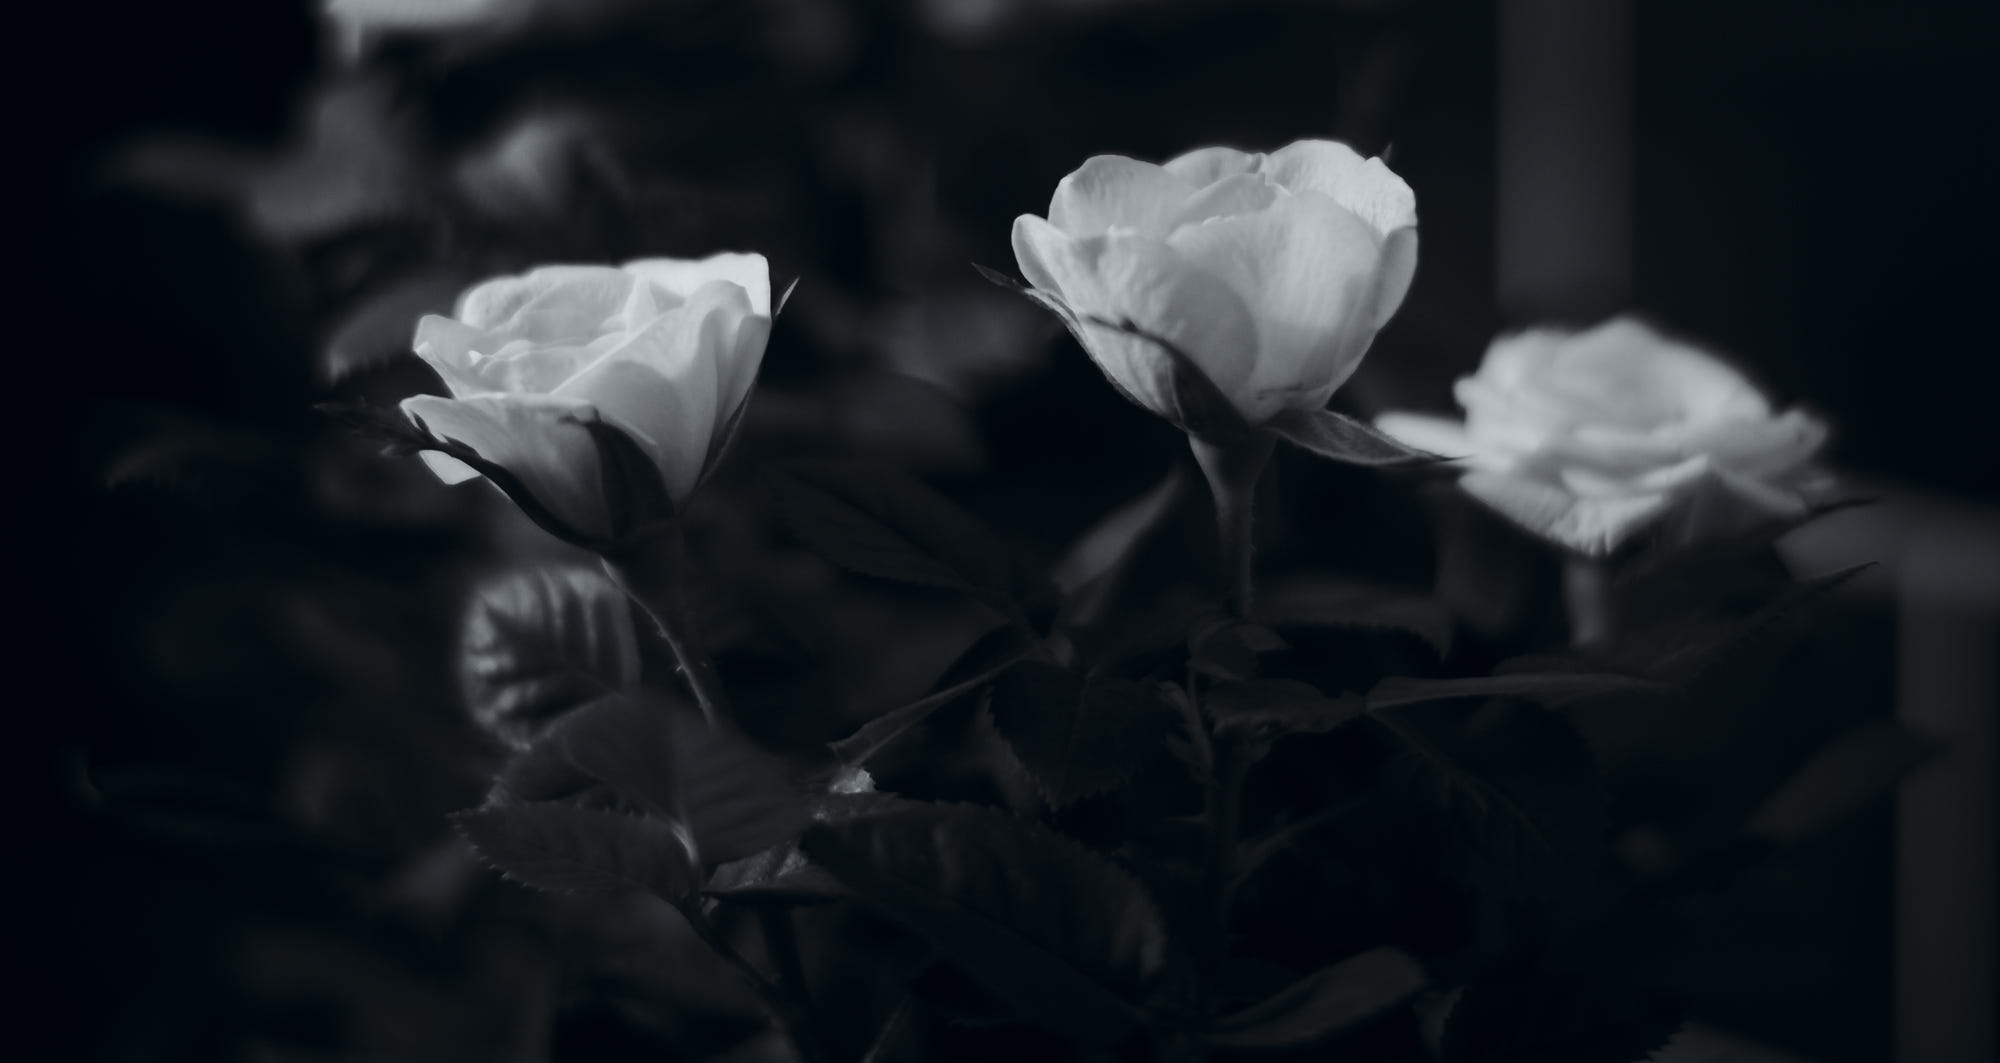 Ba đóa hoa hồng trắng đau buồn